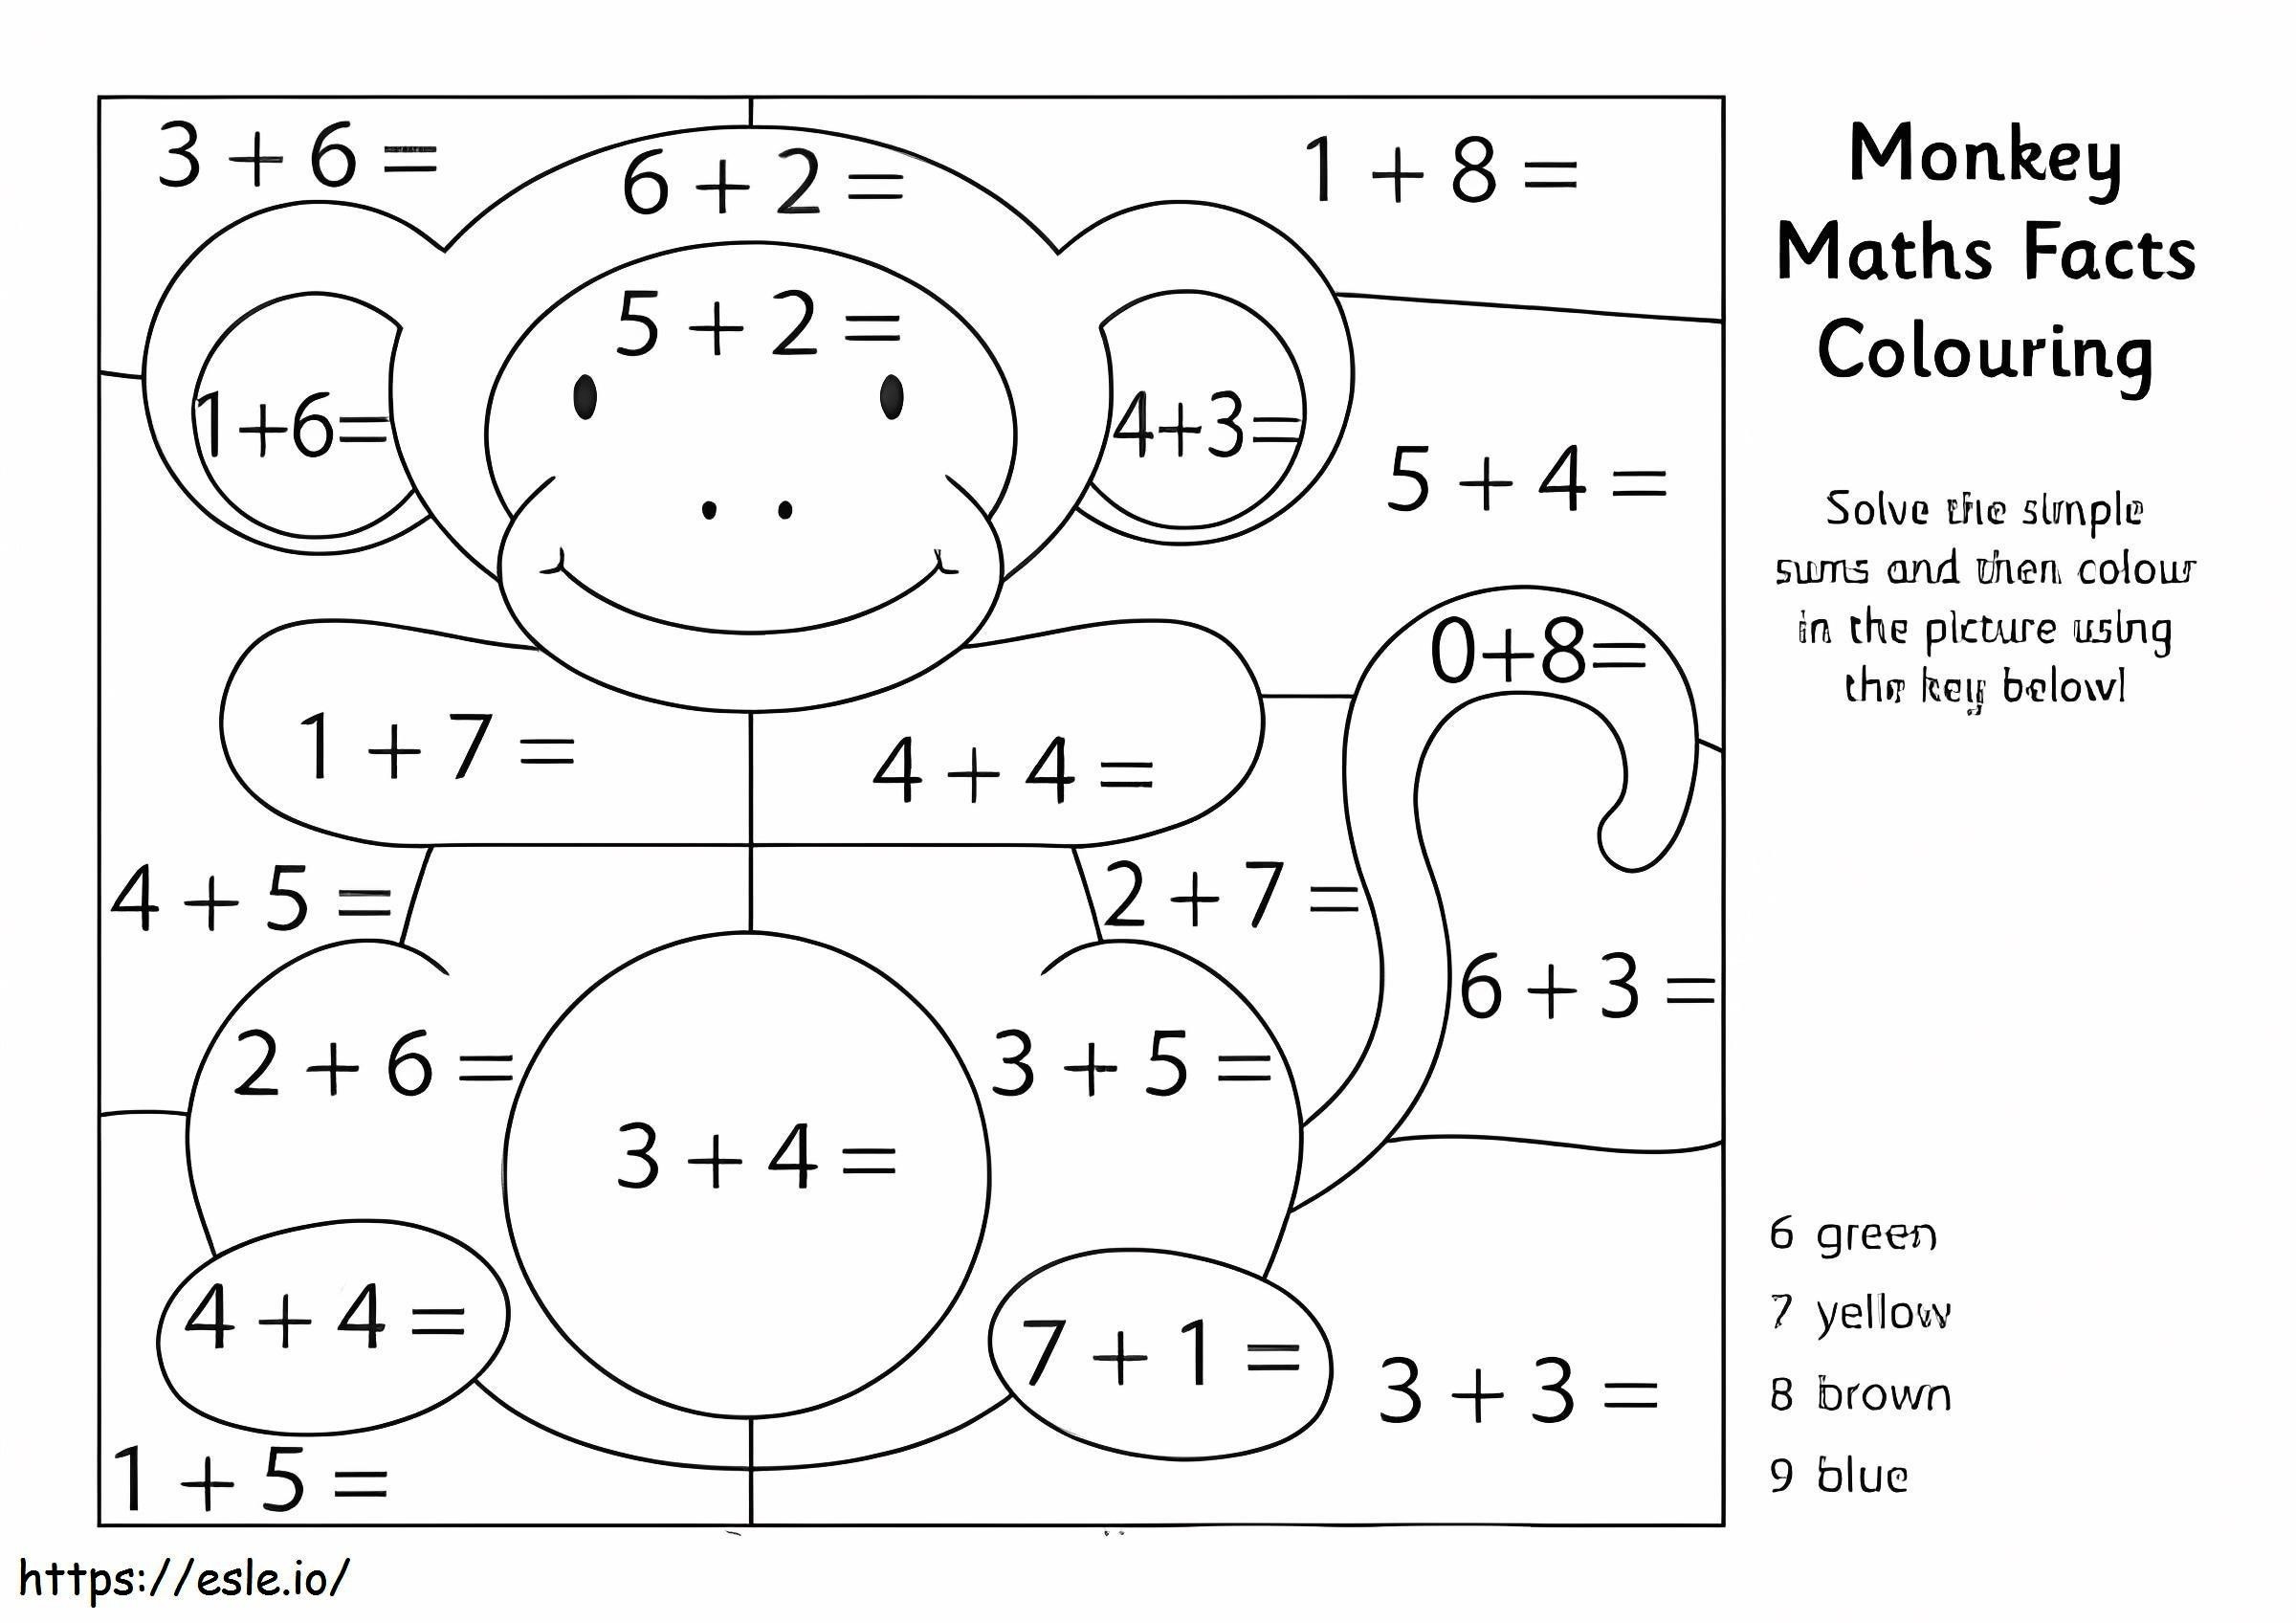 Fișa de lucru pentru matematică maimuță de colorat